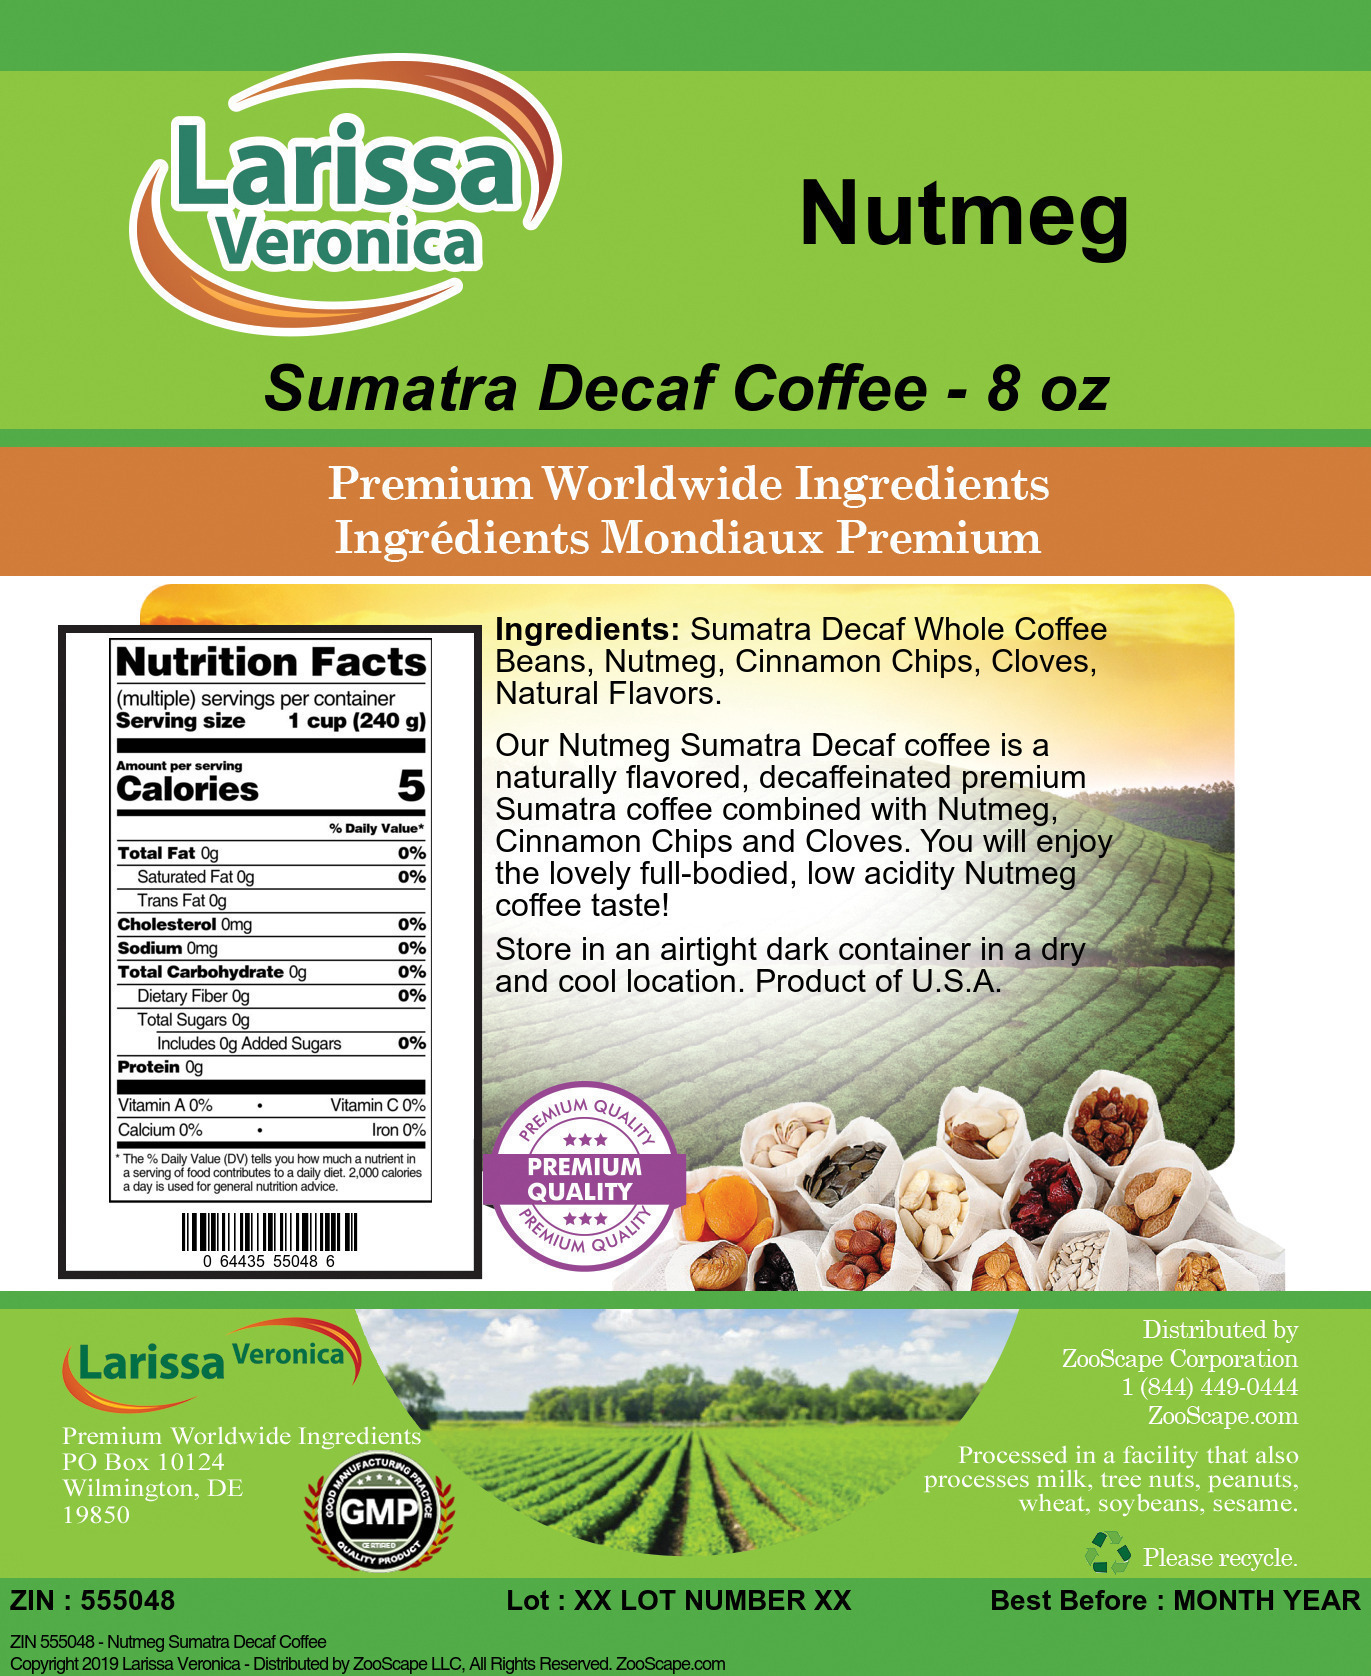 Nutmeg Sumatra Decaf Coffee - Label